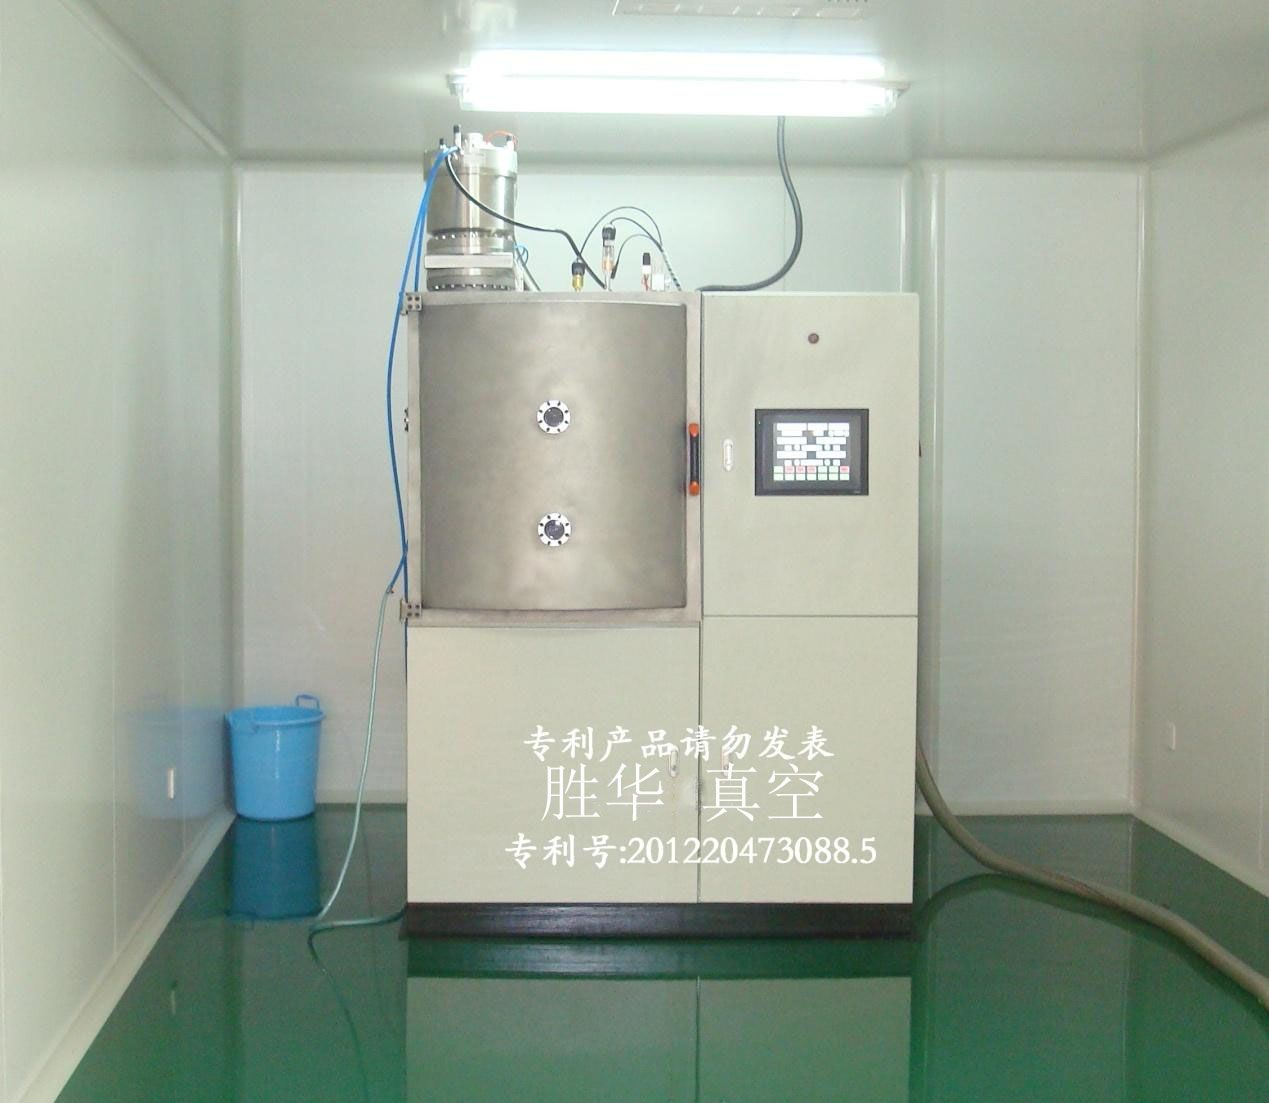 FKGA22-6661磁控溅射光亮镀膜设备